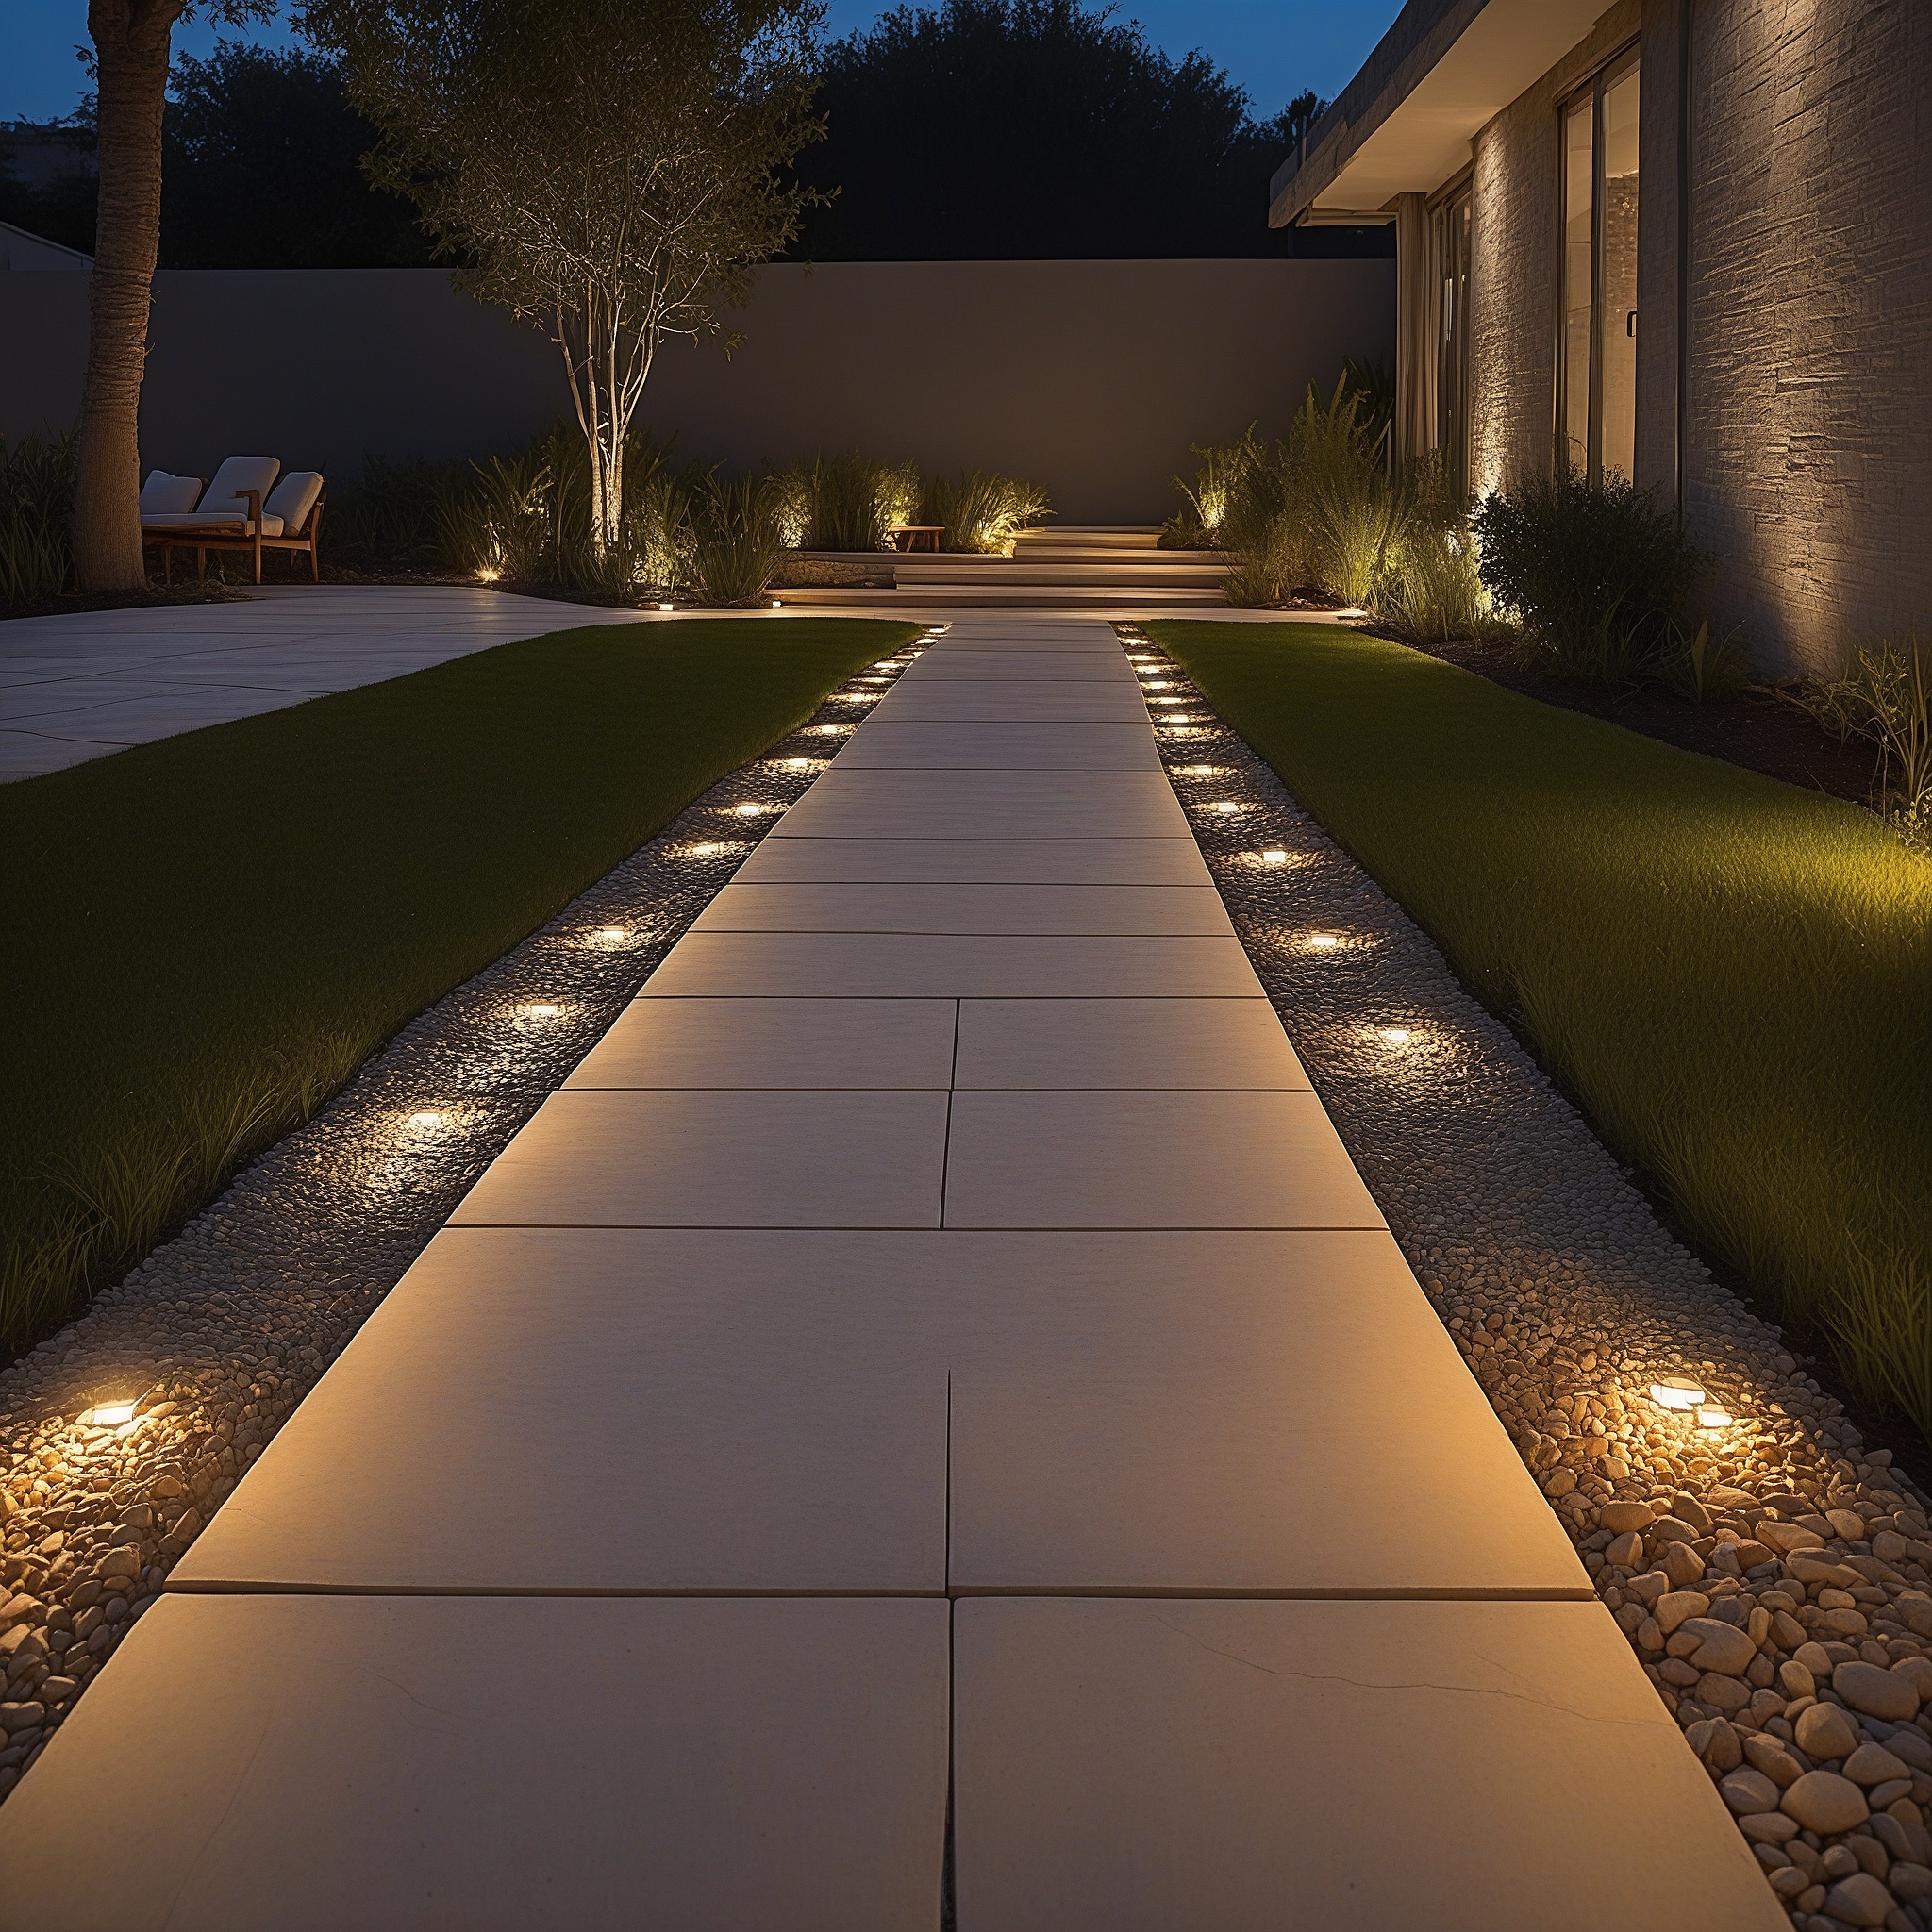 LED Pathway Lights On Stone Walkway